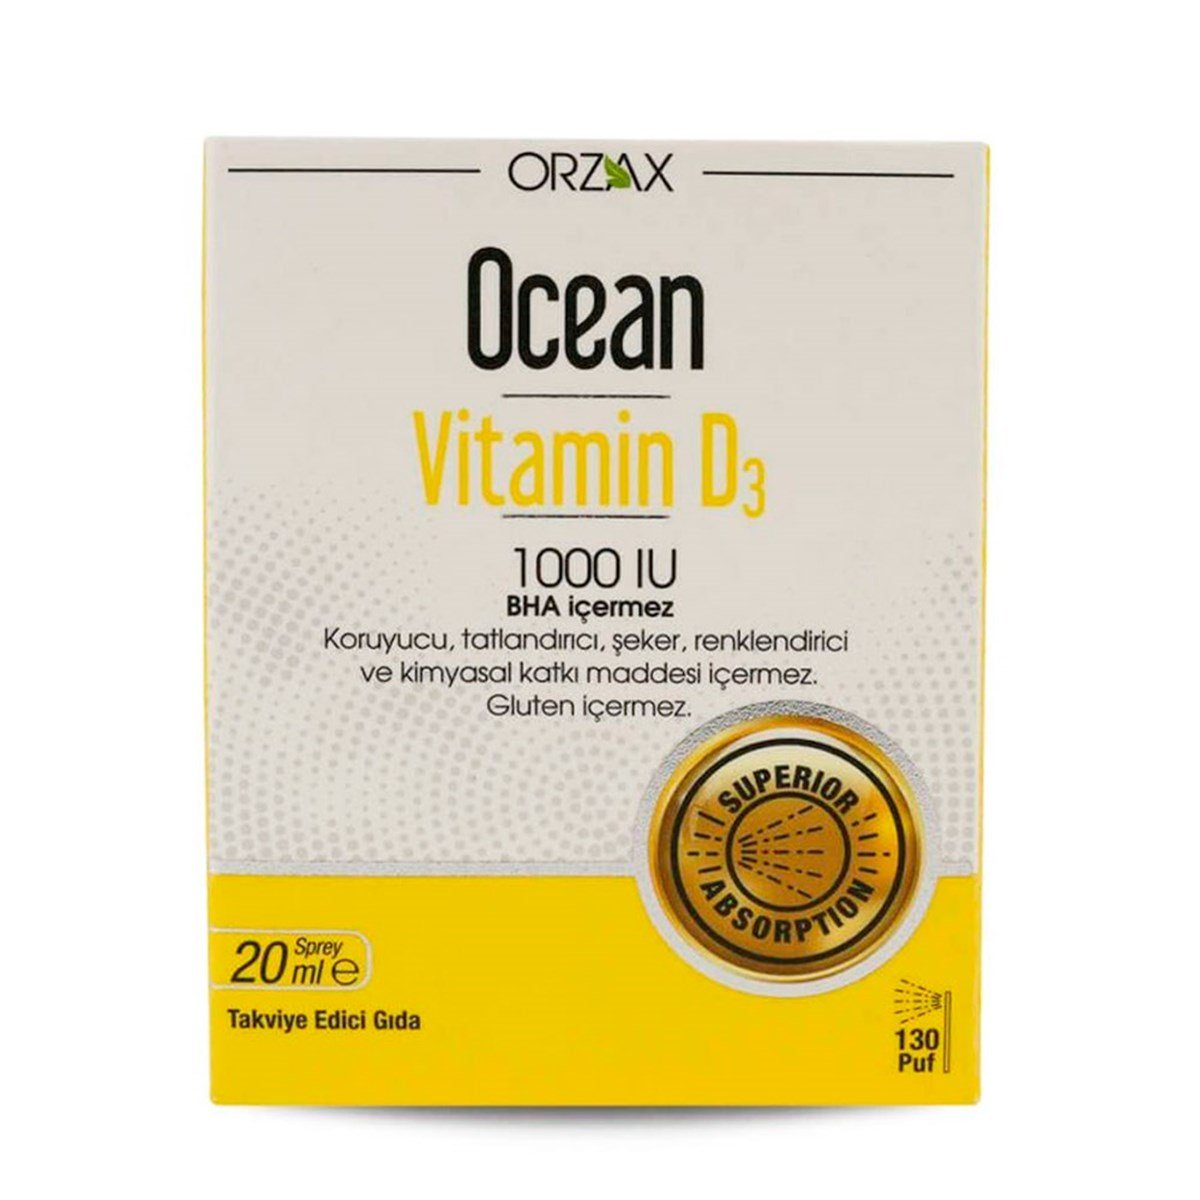 Ocean Vitamin D3 1000 IU 20ml Sprey | Fiyatı 49,50 TL | Vitamin Dolabı